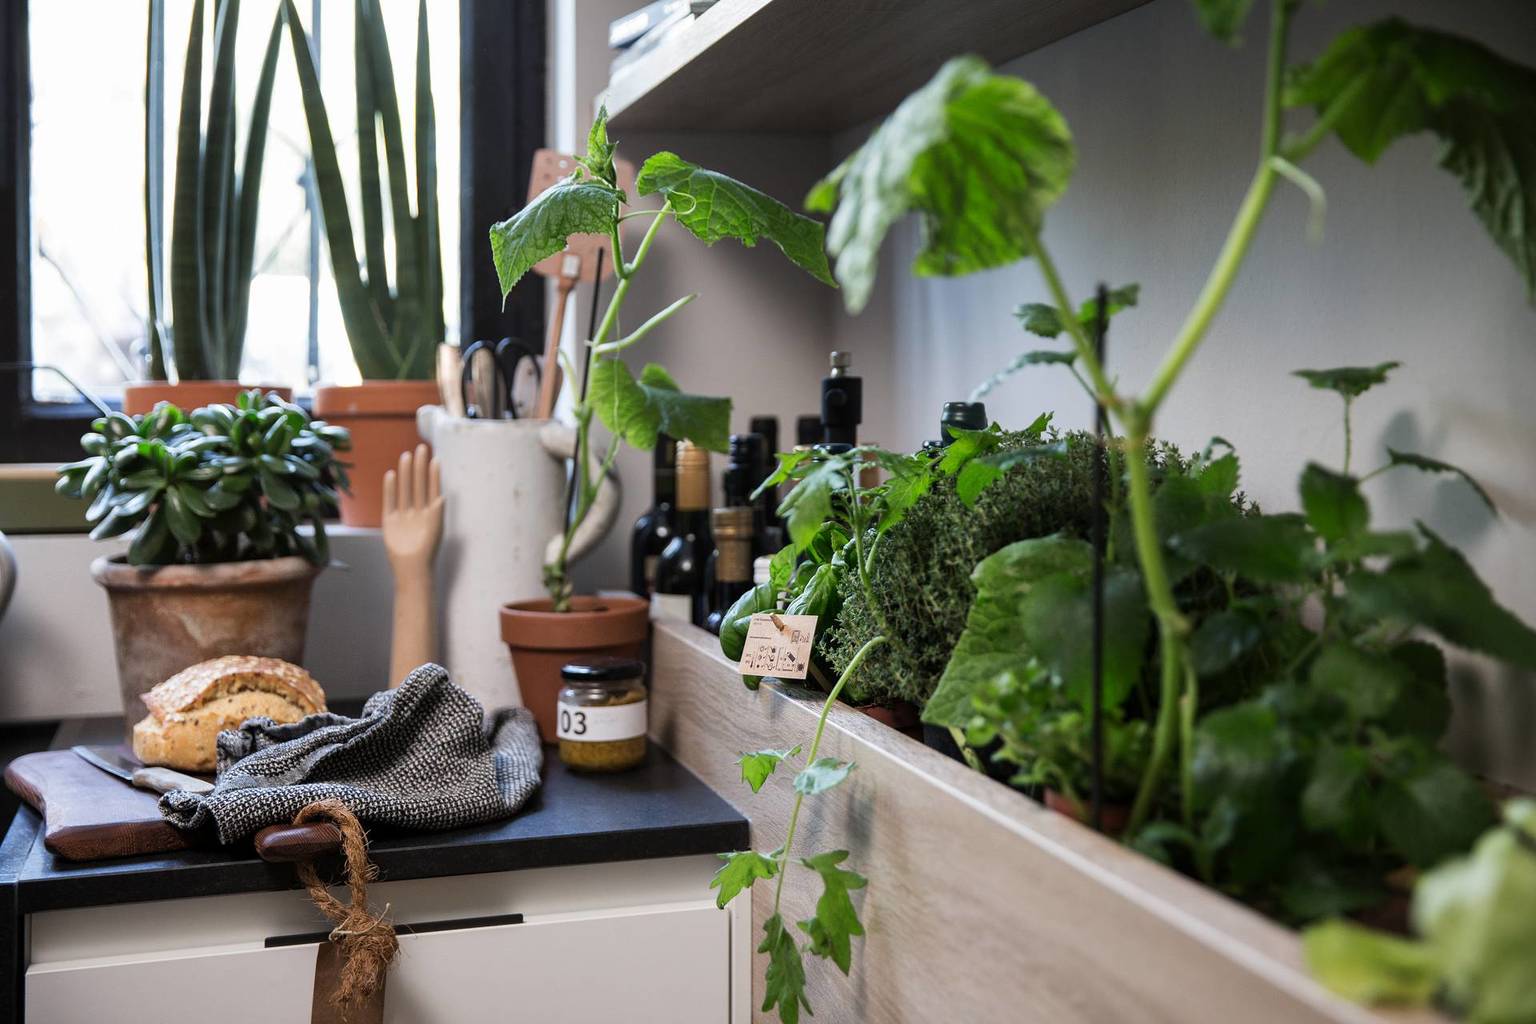 SieMatic Urban S2 SE herb garden grows fresh herbs in the kitchen